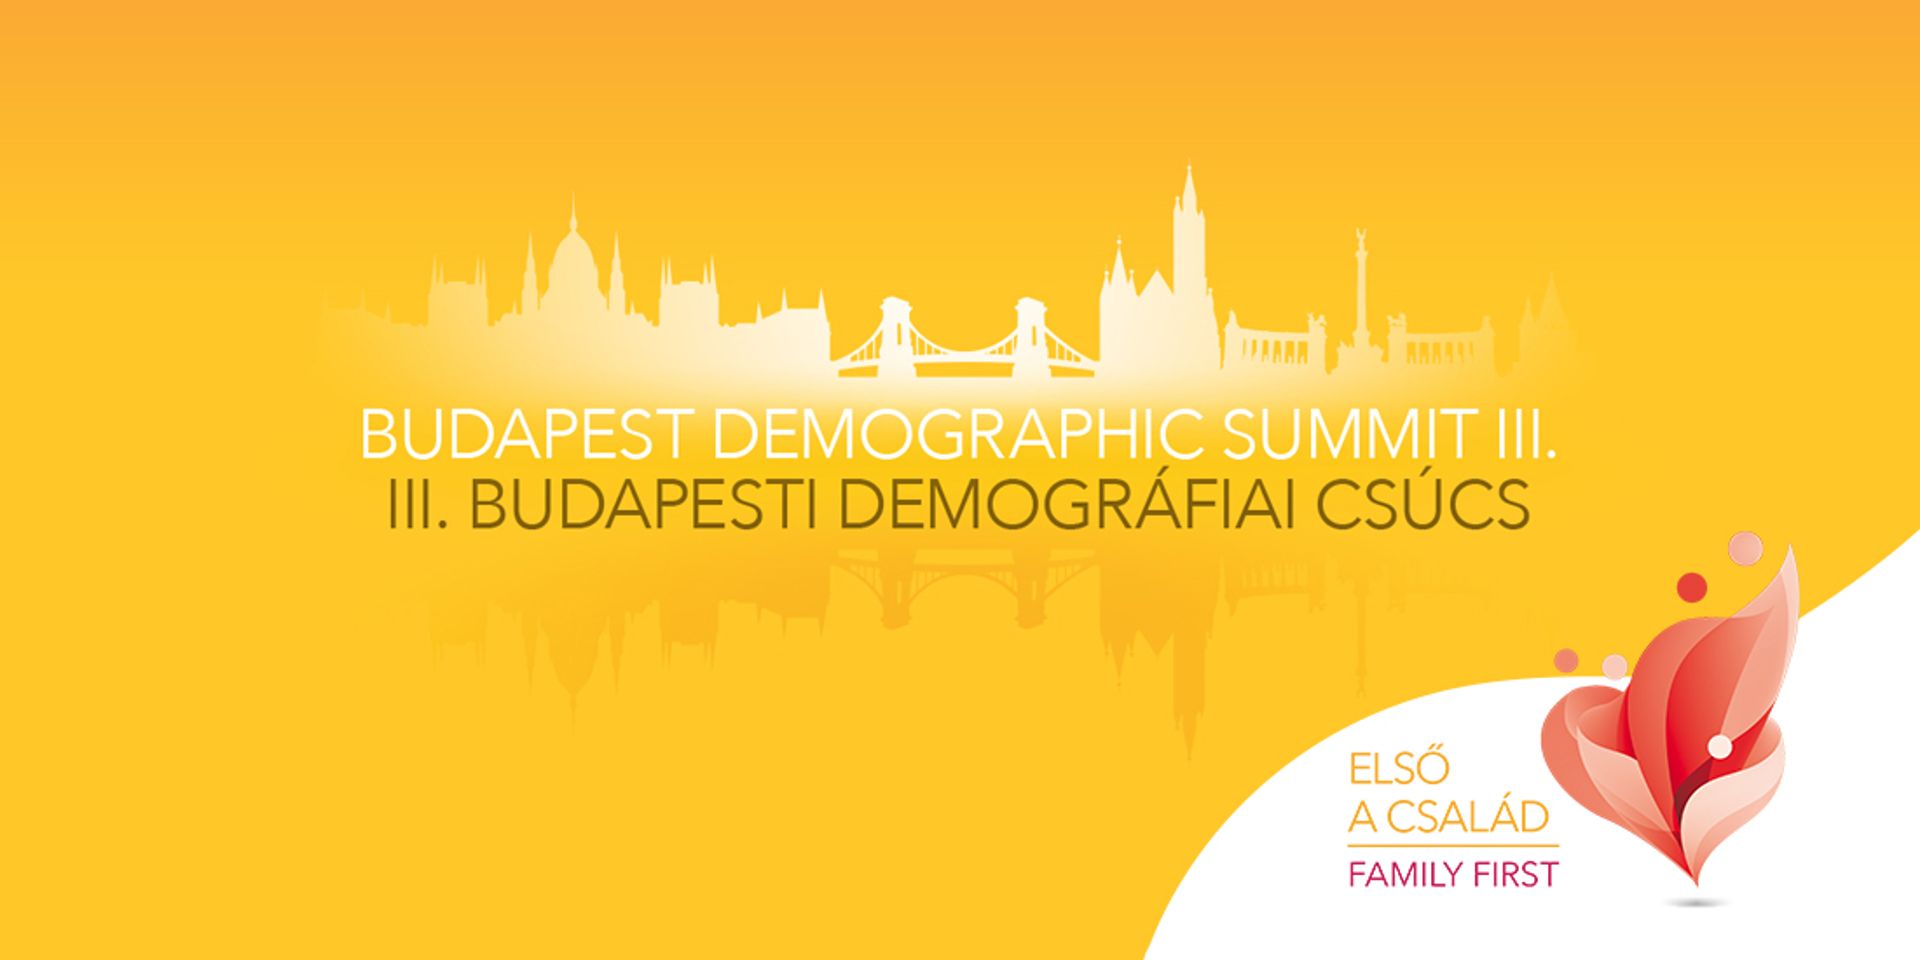 III. Budapesti Demográfiai Csúcs